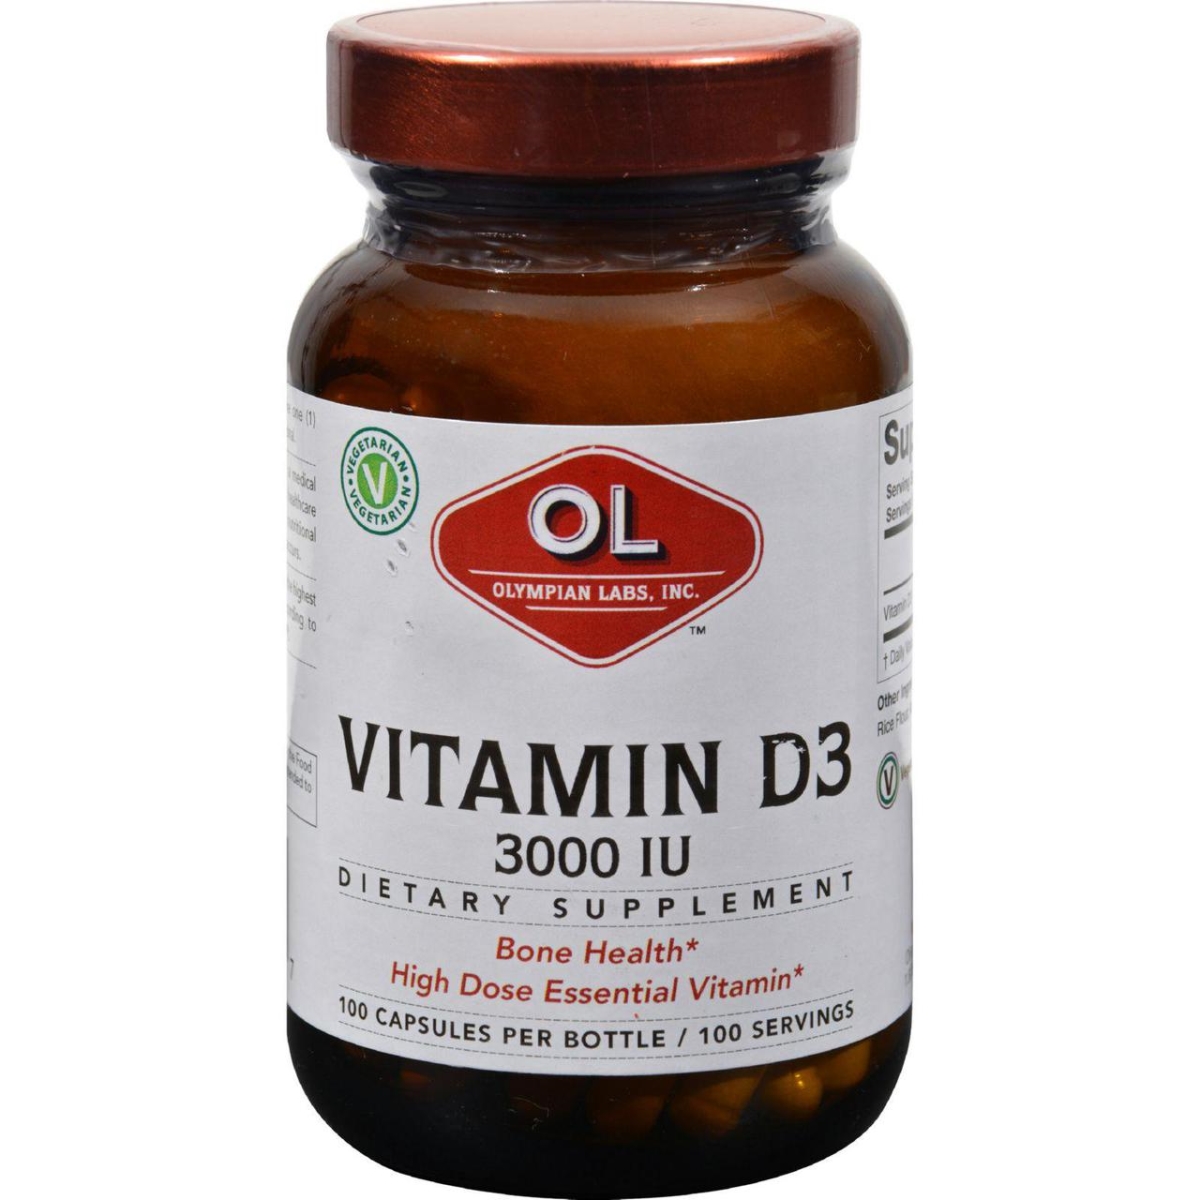 Hg1214576 Vitamin D3 - 3000 Iu, 100 Capsules